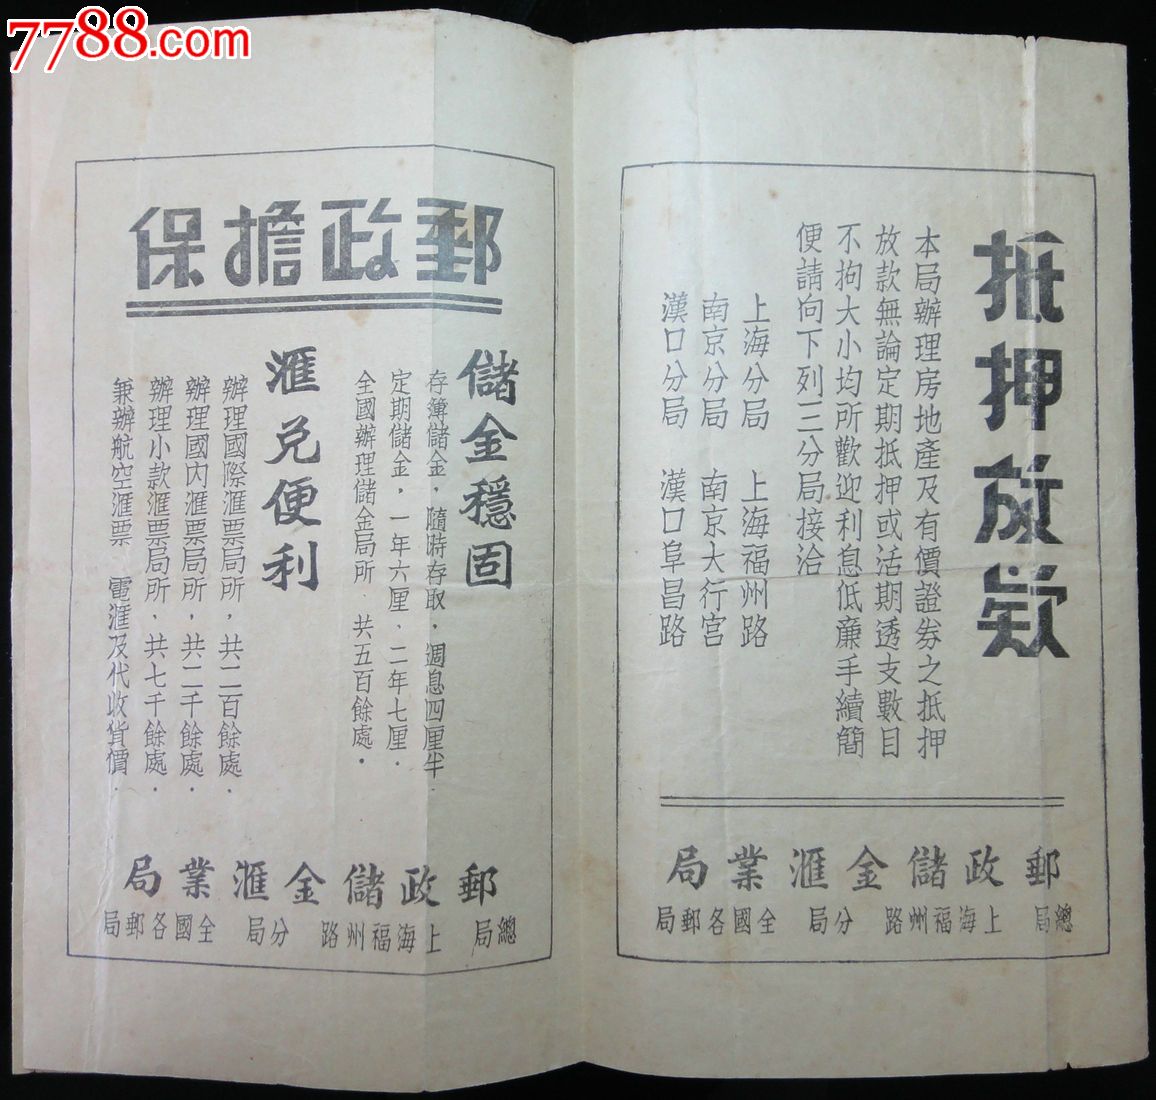 1933年中华国有铁路客车时刻表-京沪线附凇沪